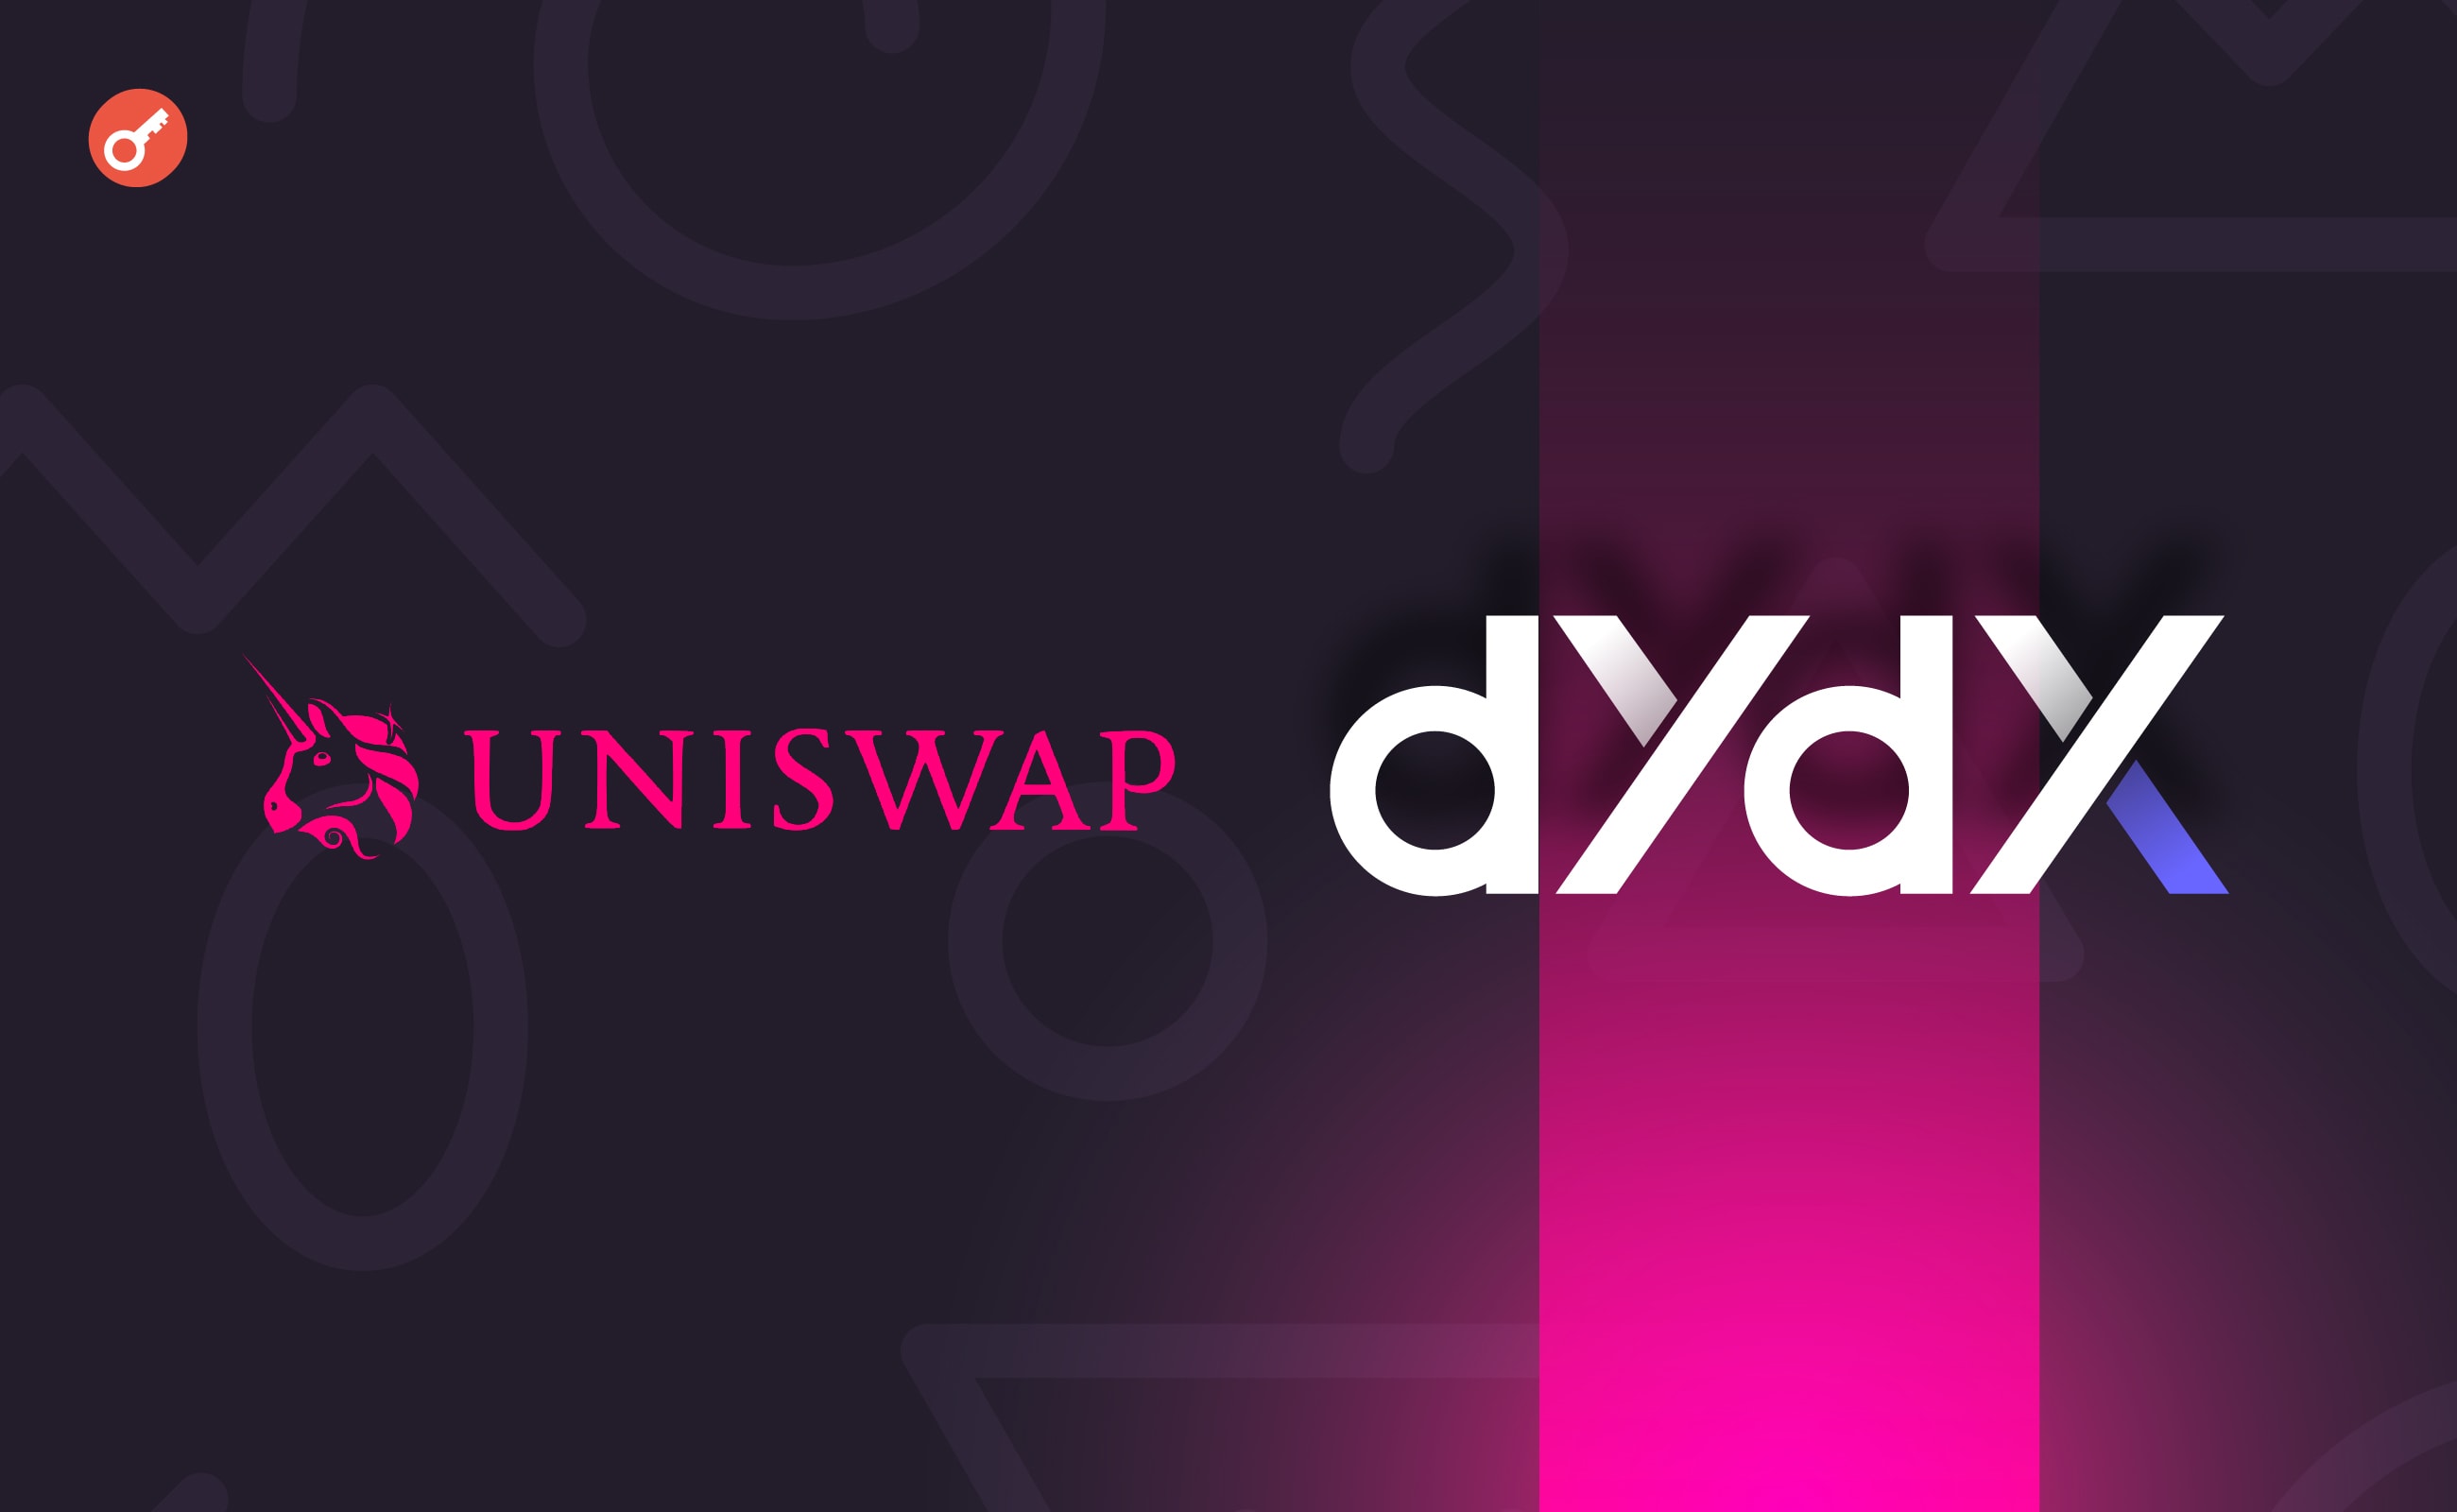 dYdX обійшла Uniswap за денними обсягами торгів. Головний колаж новини.